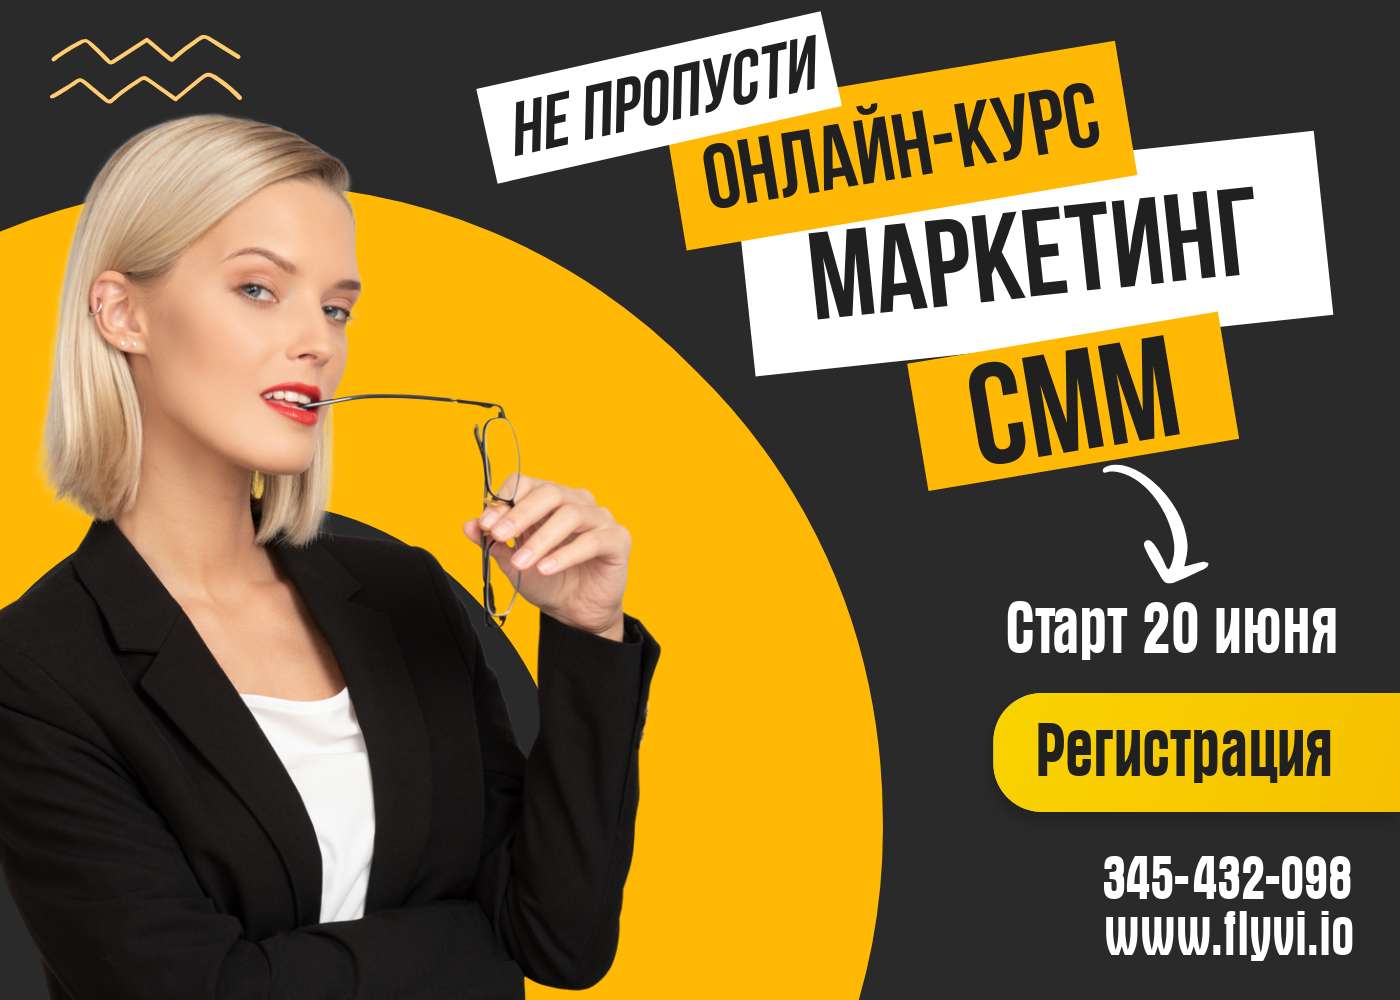 Броская реклама для онлайн курсов по маркетингу и смм в черно-желтых цветах